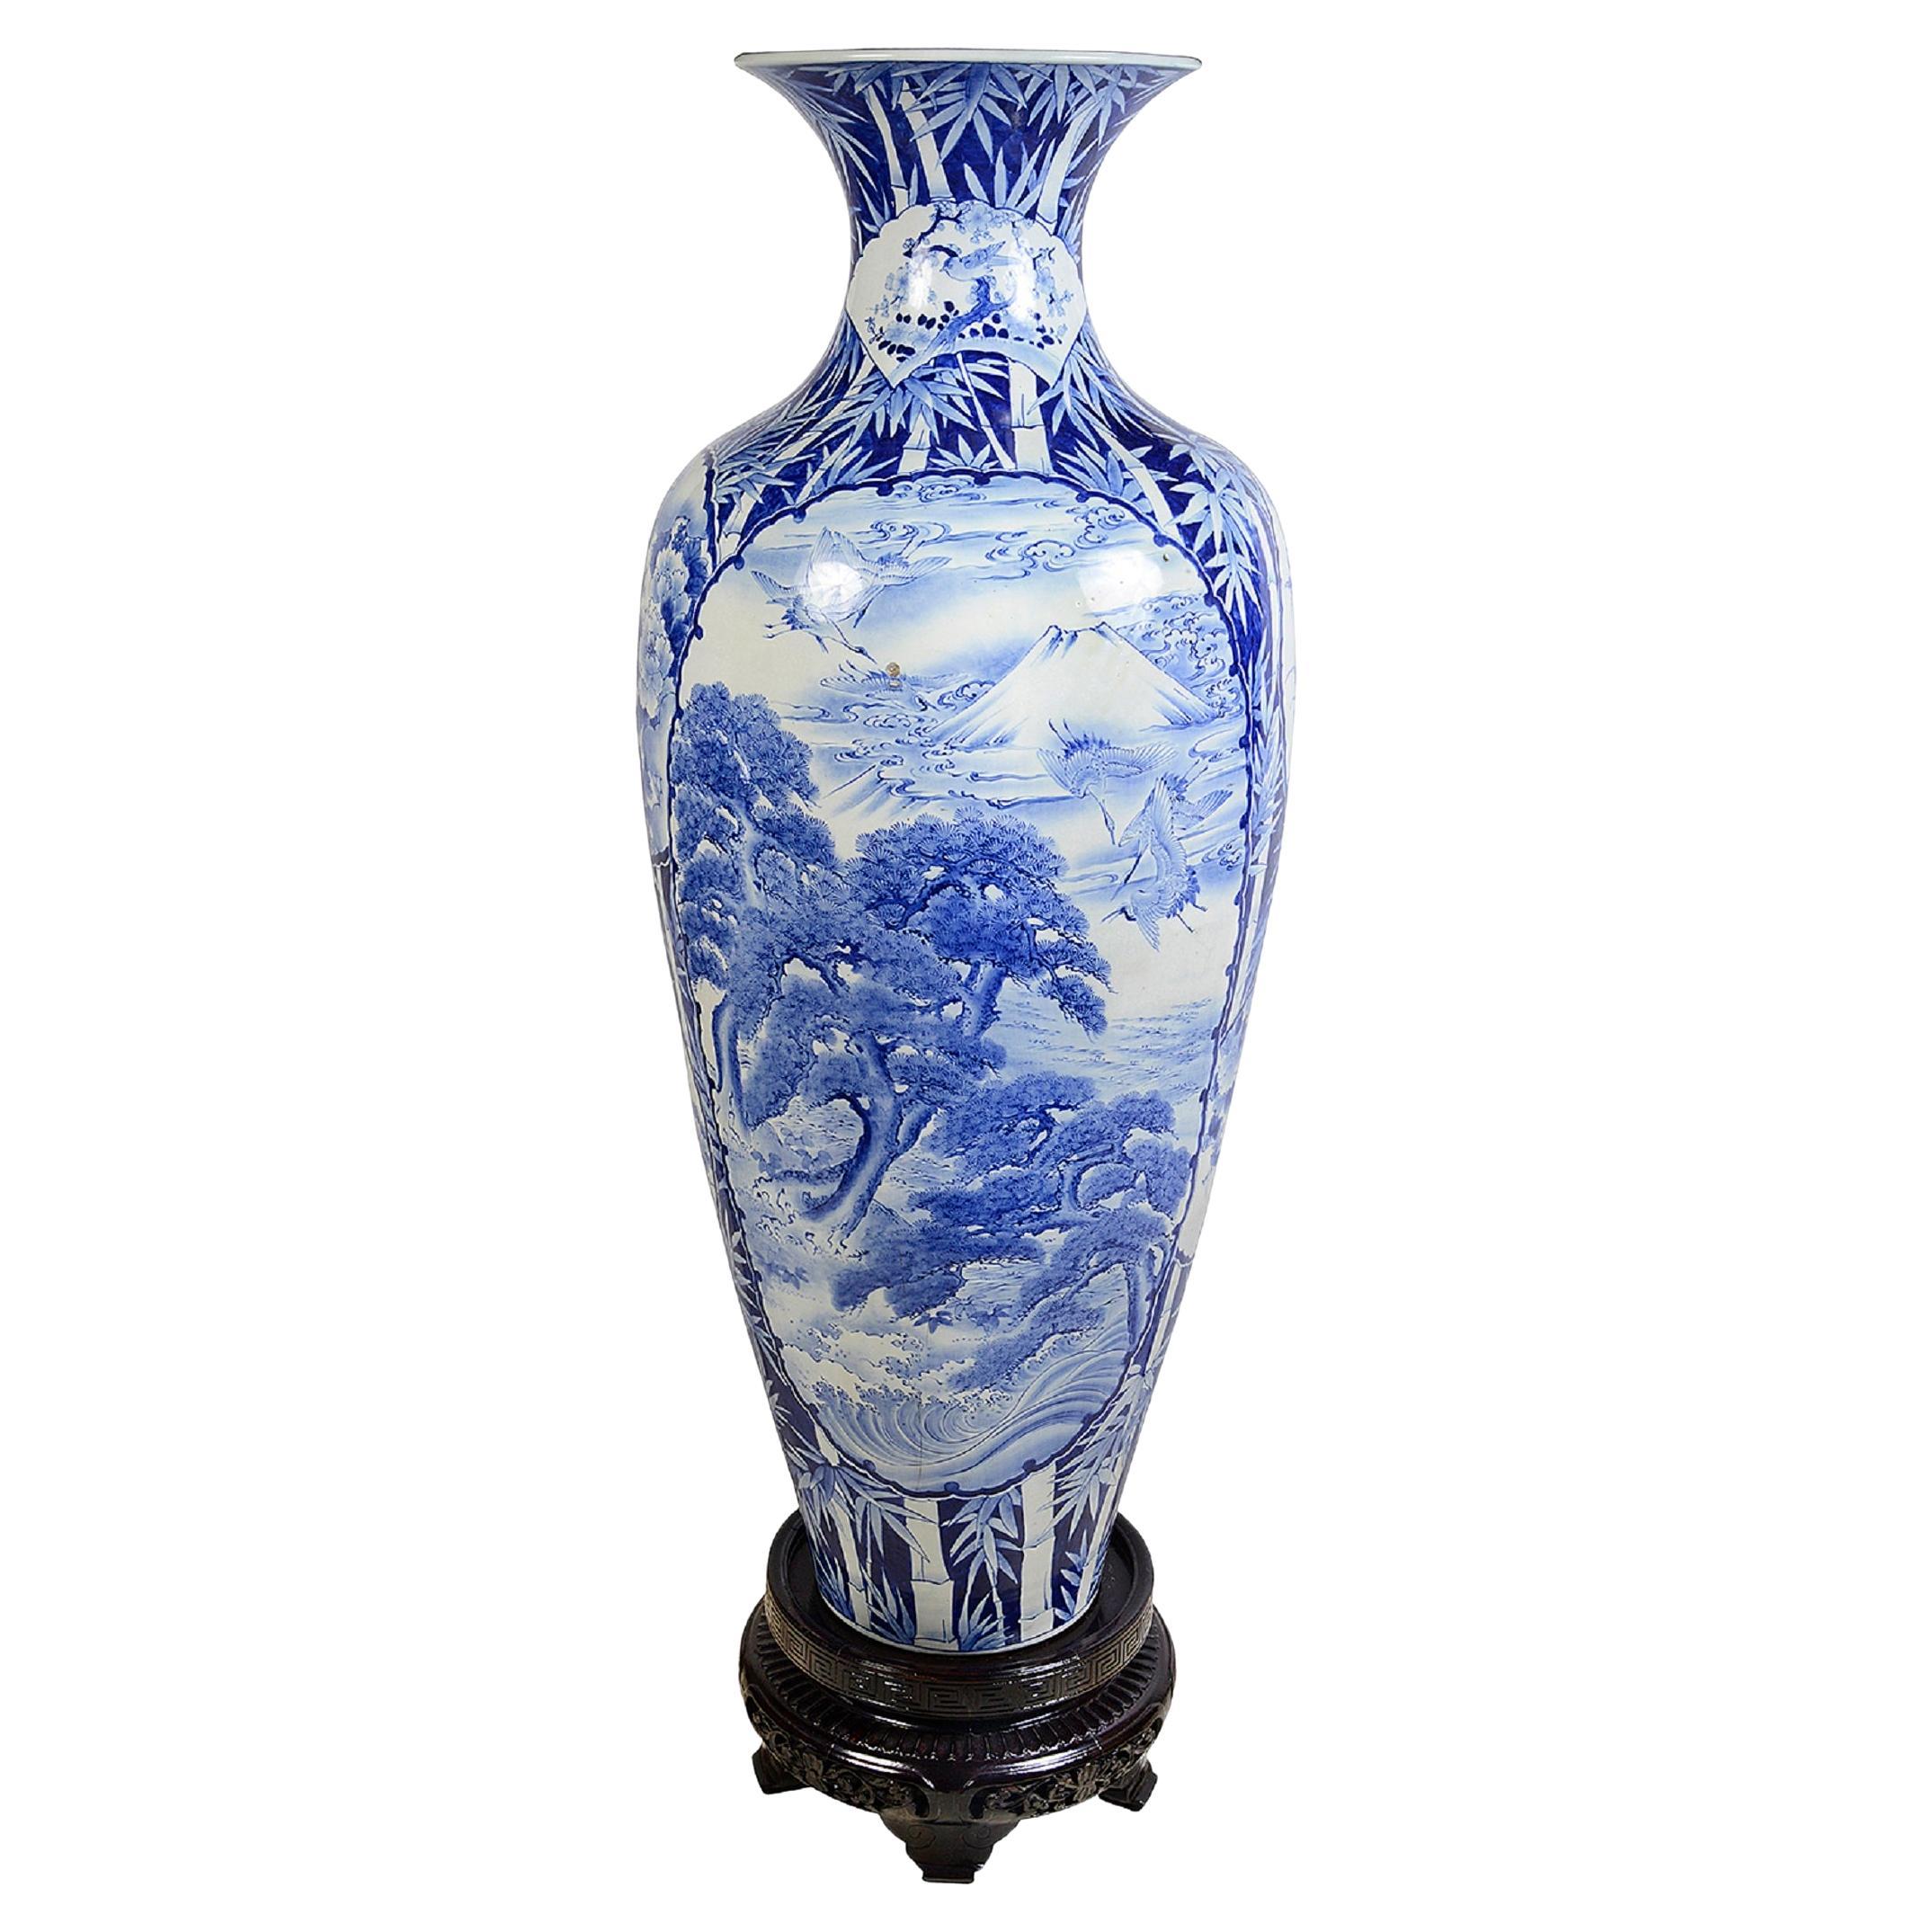 Grand vase japonais bleu et blanc du 19ème siècle